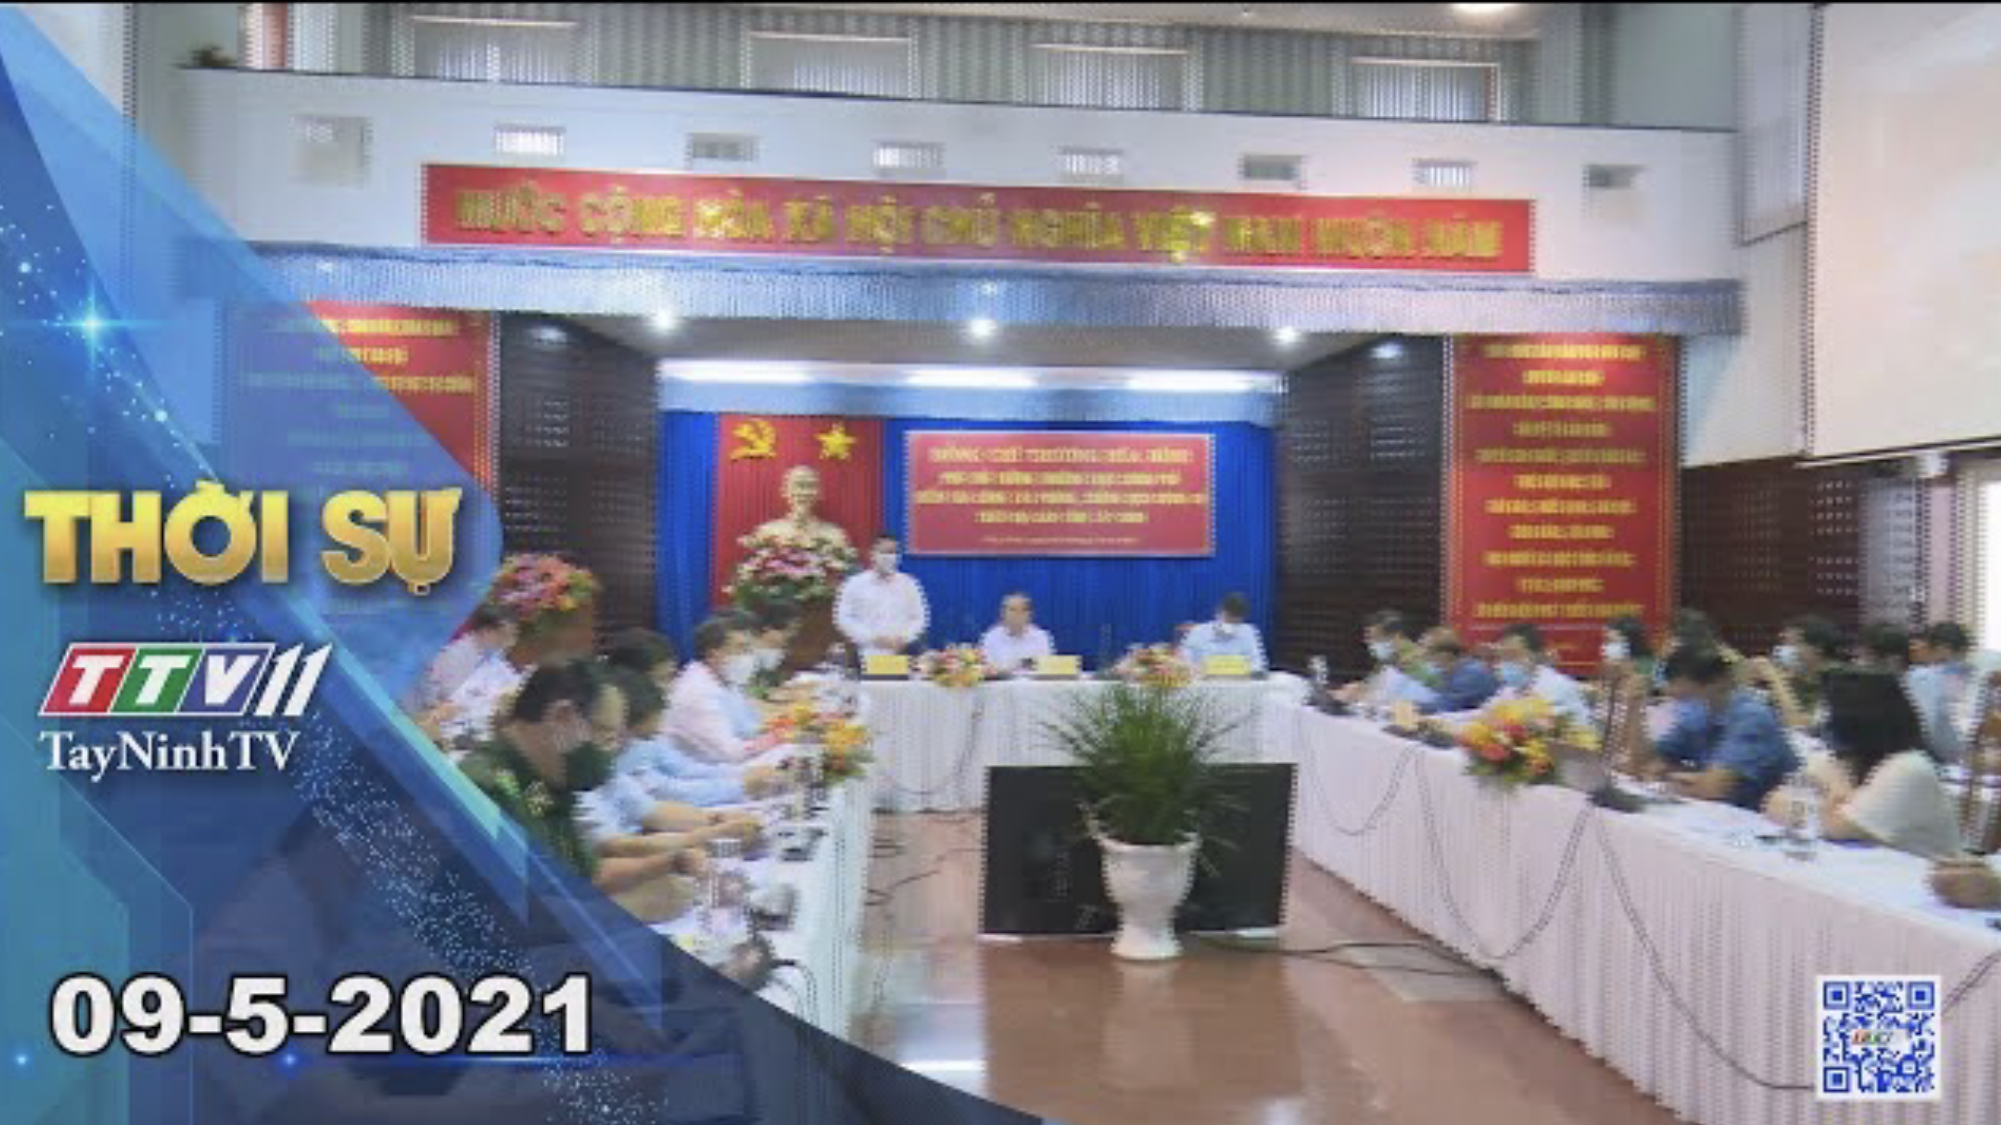 Thời sự Tây Ninh 09-5-2021 | Tin tức hôm nay | TayNinhTV